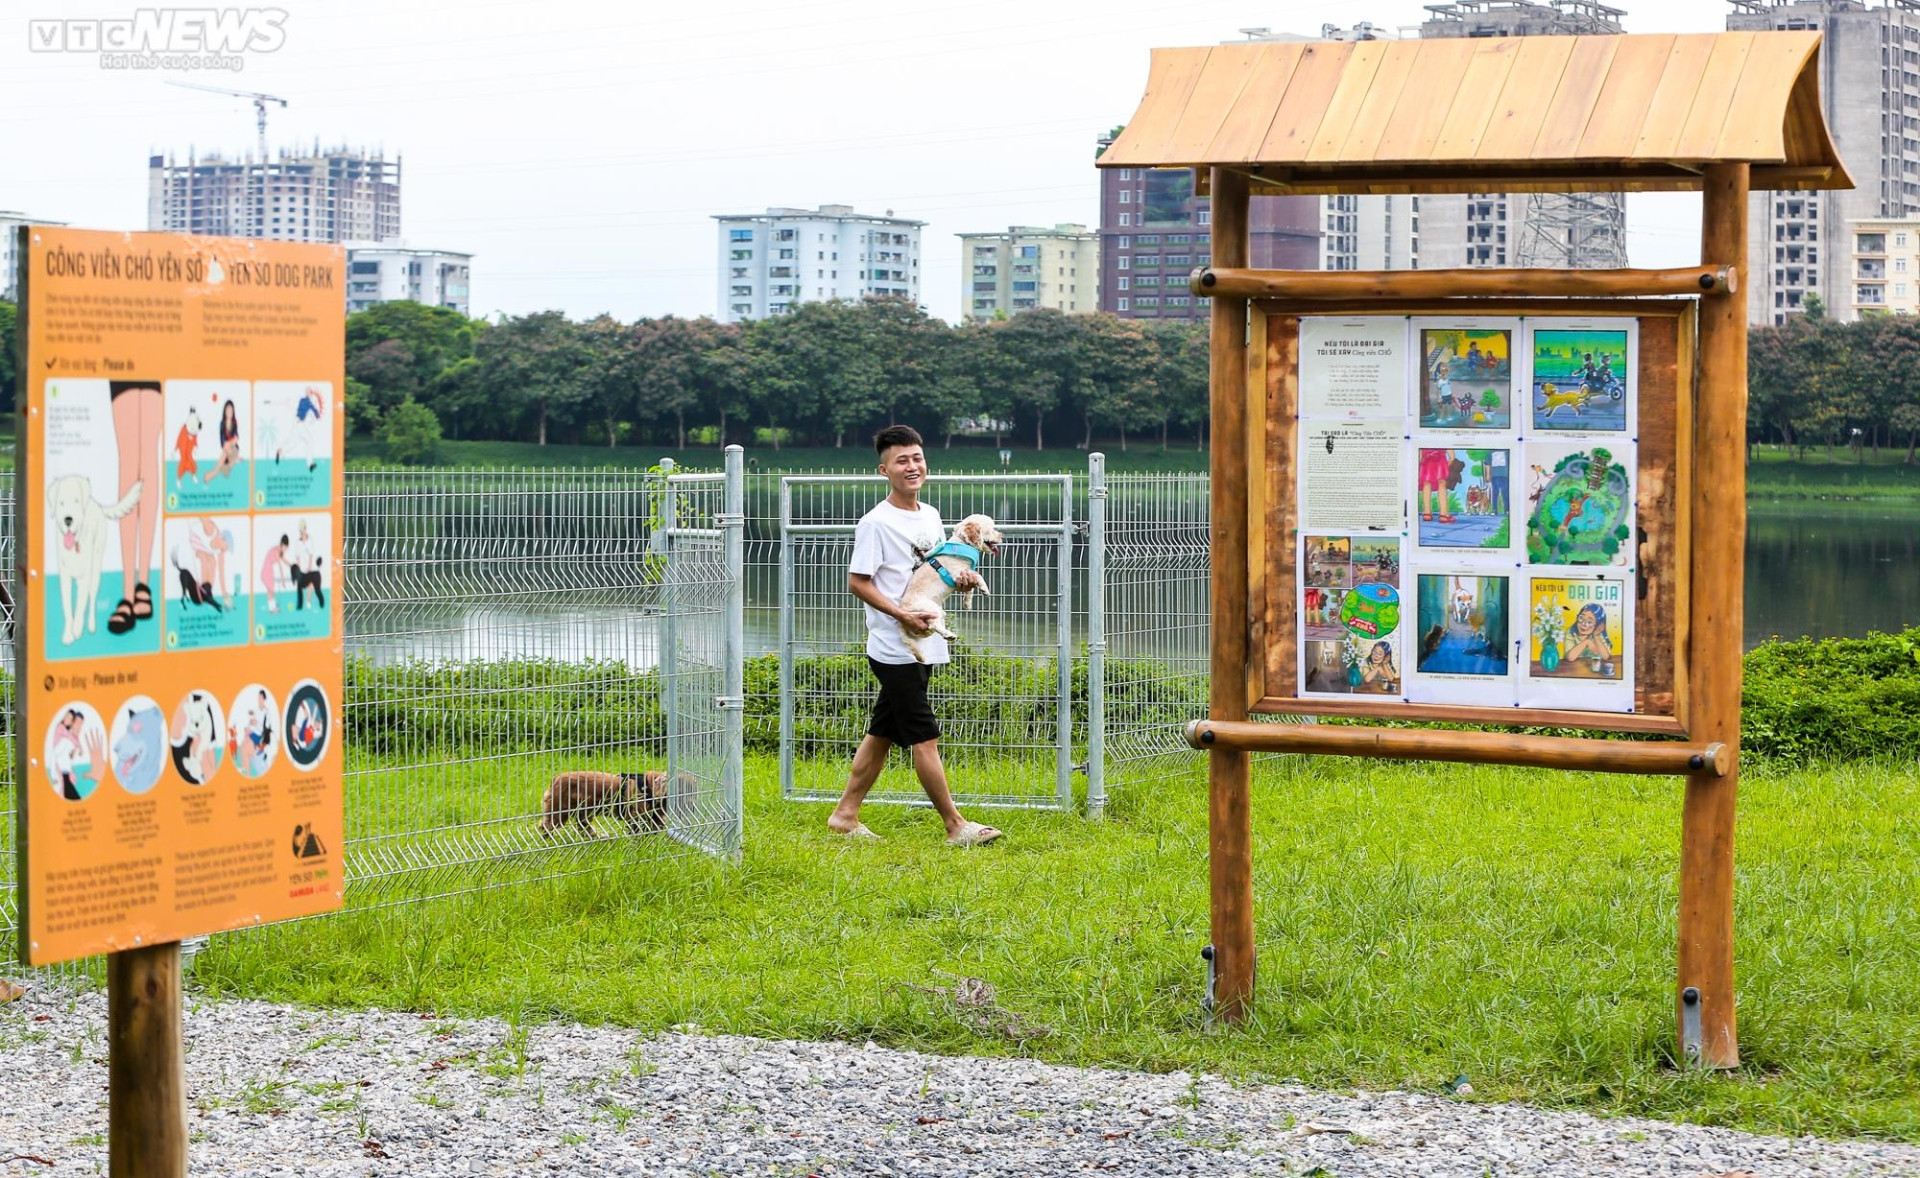 Công viên dành cho chó đầu tiên tại Hà Nội, mỗi ngày đón hơn 100 lượt thú cưng - 1